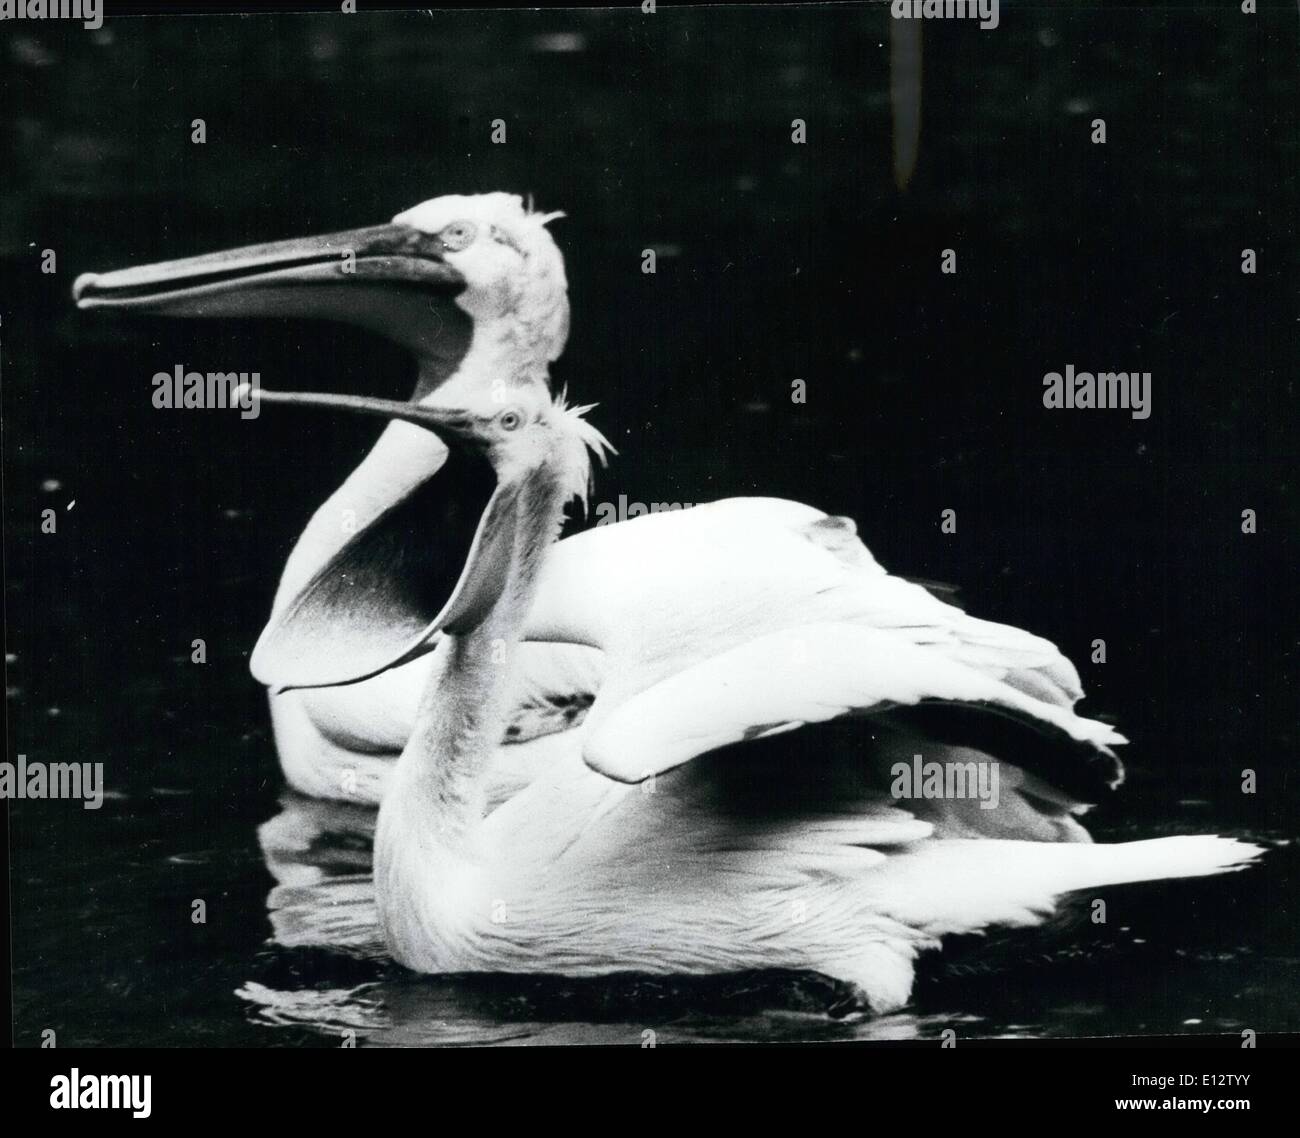 El 25 de febrero, 2012 - Yaurning; Pelican con su pico abierto, quizás hace una verdad de lo dicho, Su boca tiene más de su vientre. Foto de stock